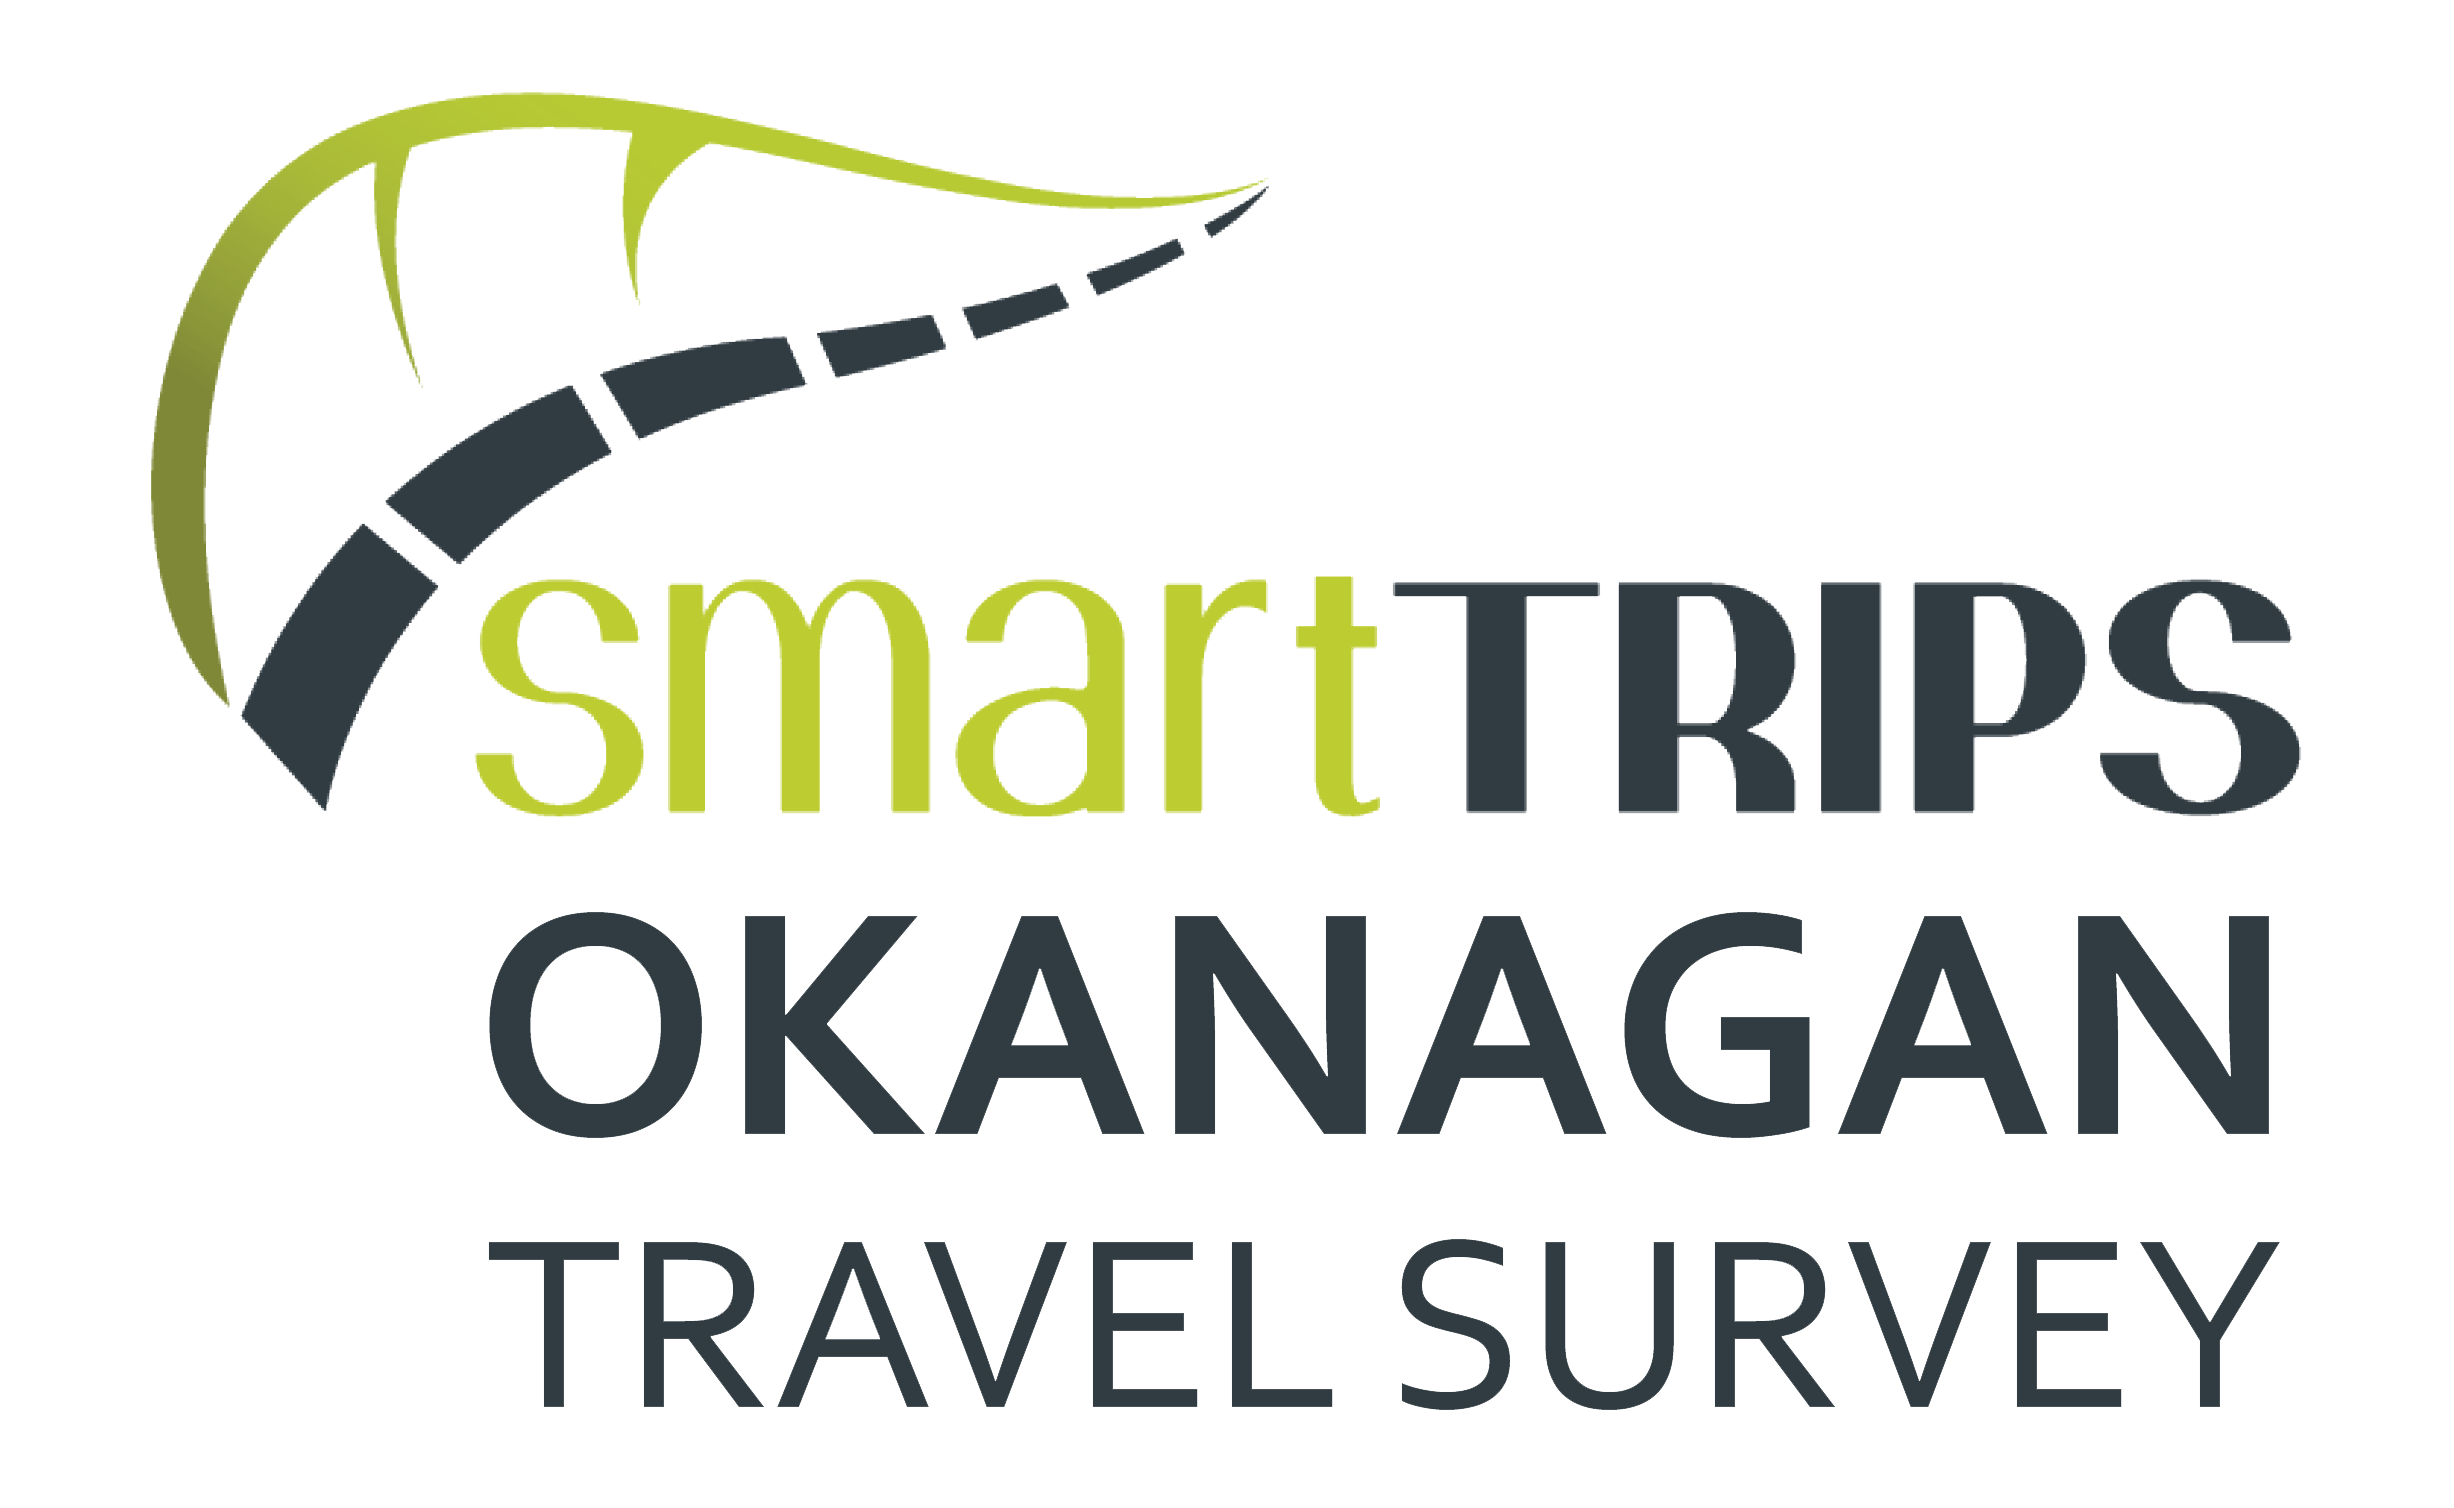 Okanagan Survey logo